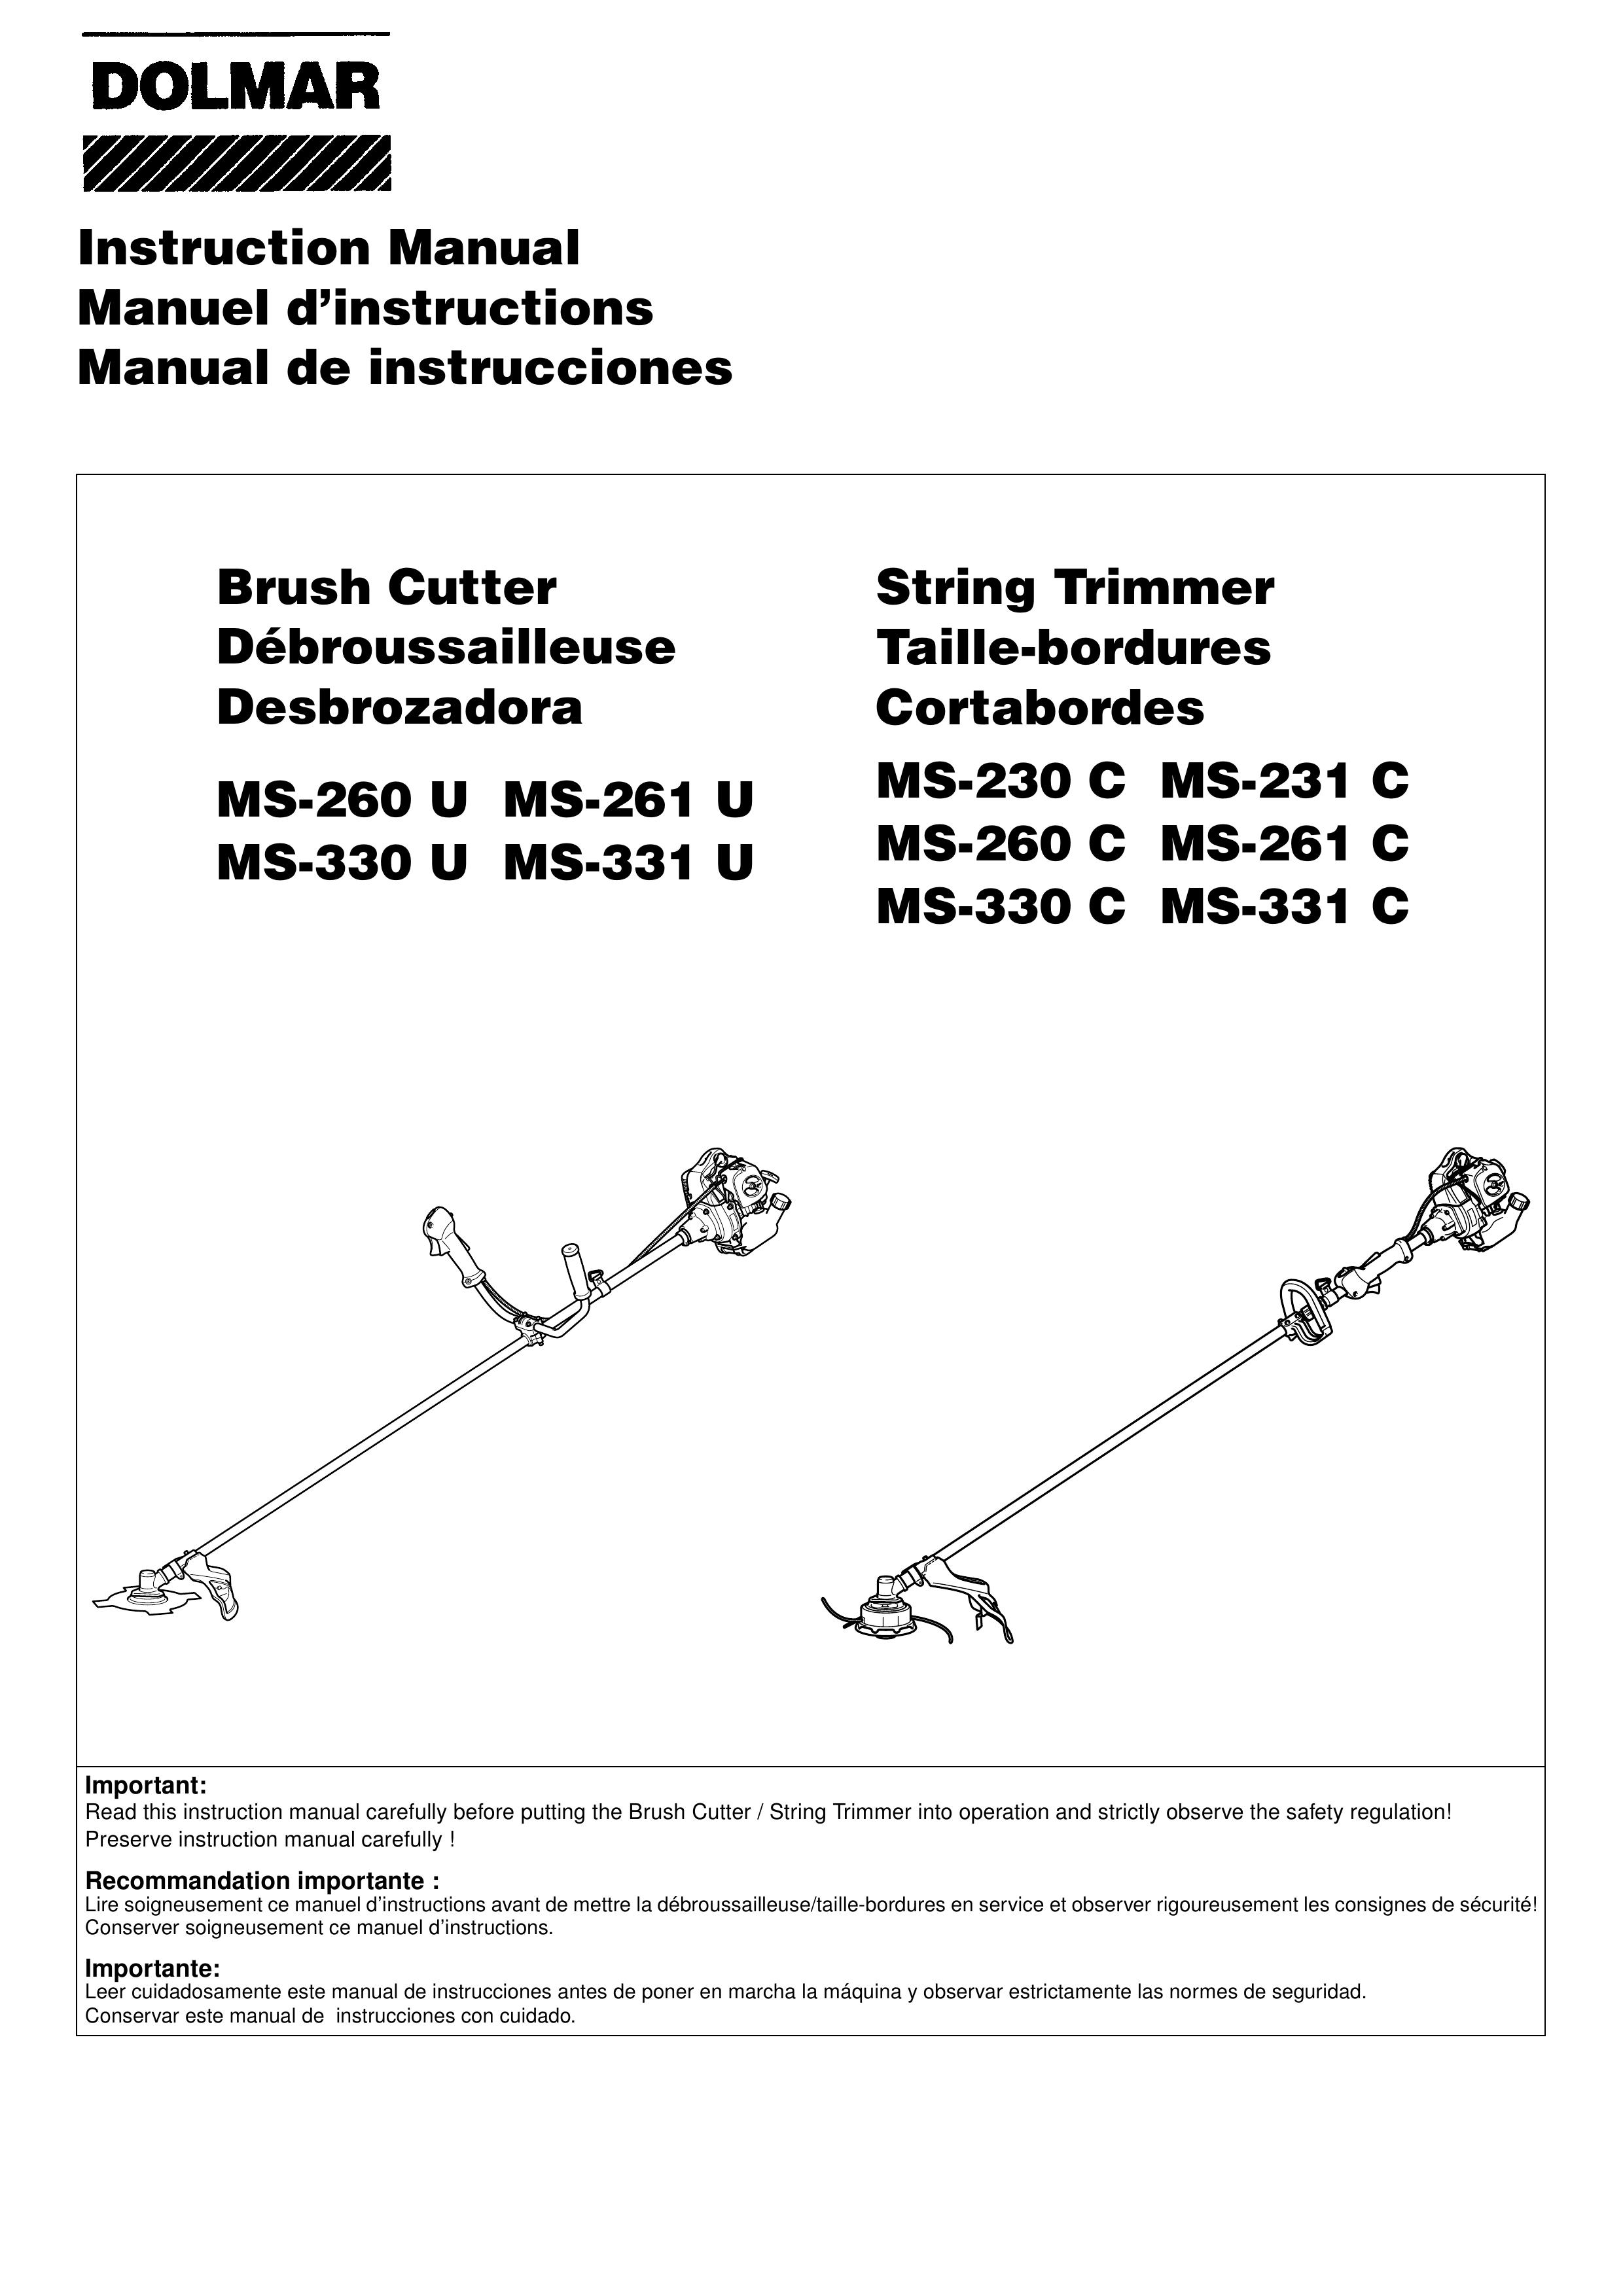 Dolmar MS-261 U Brush Cutter User Manual